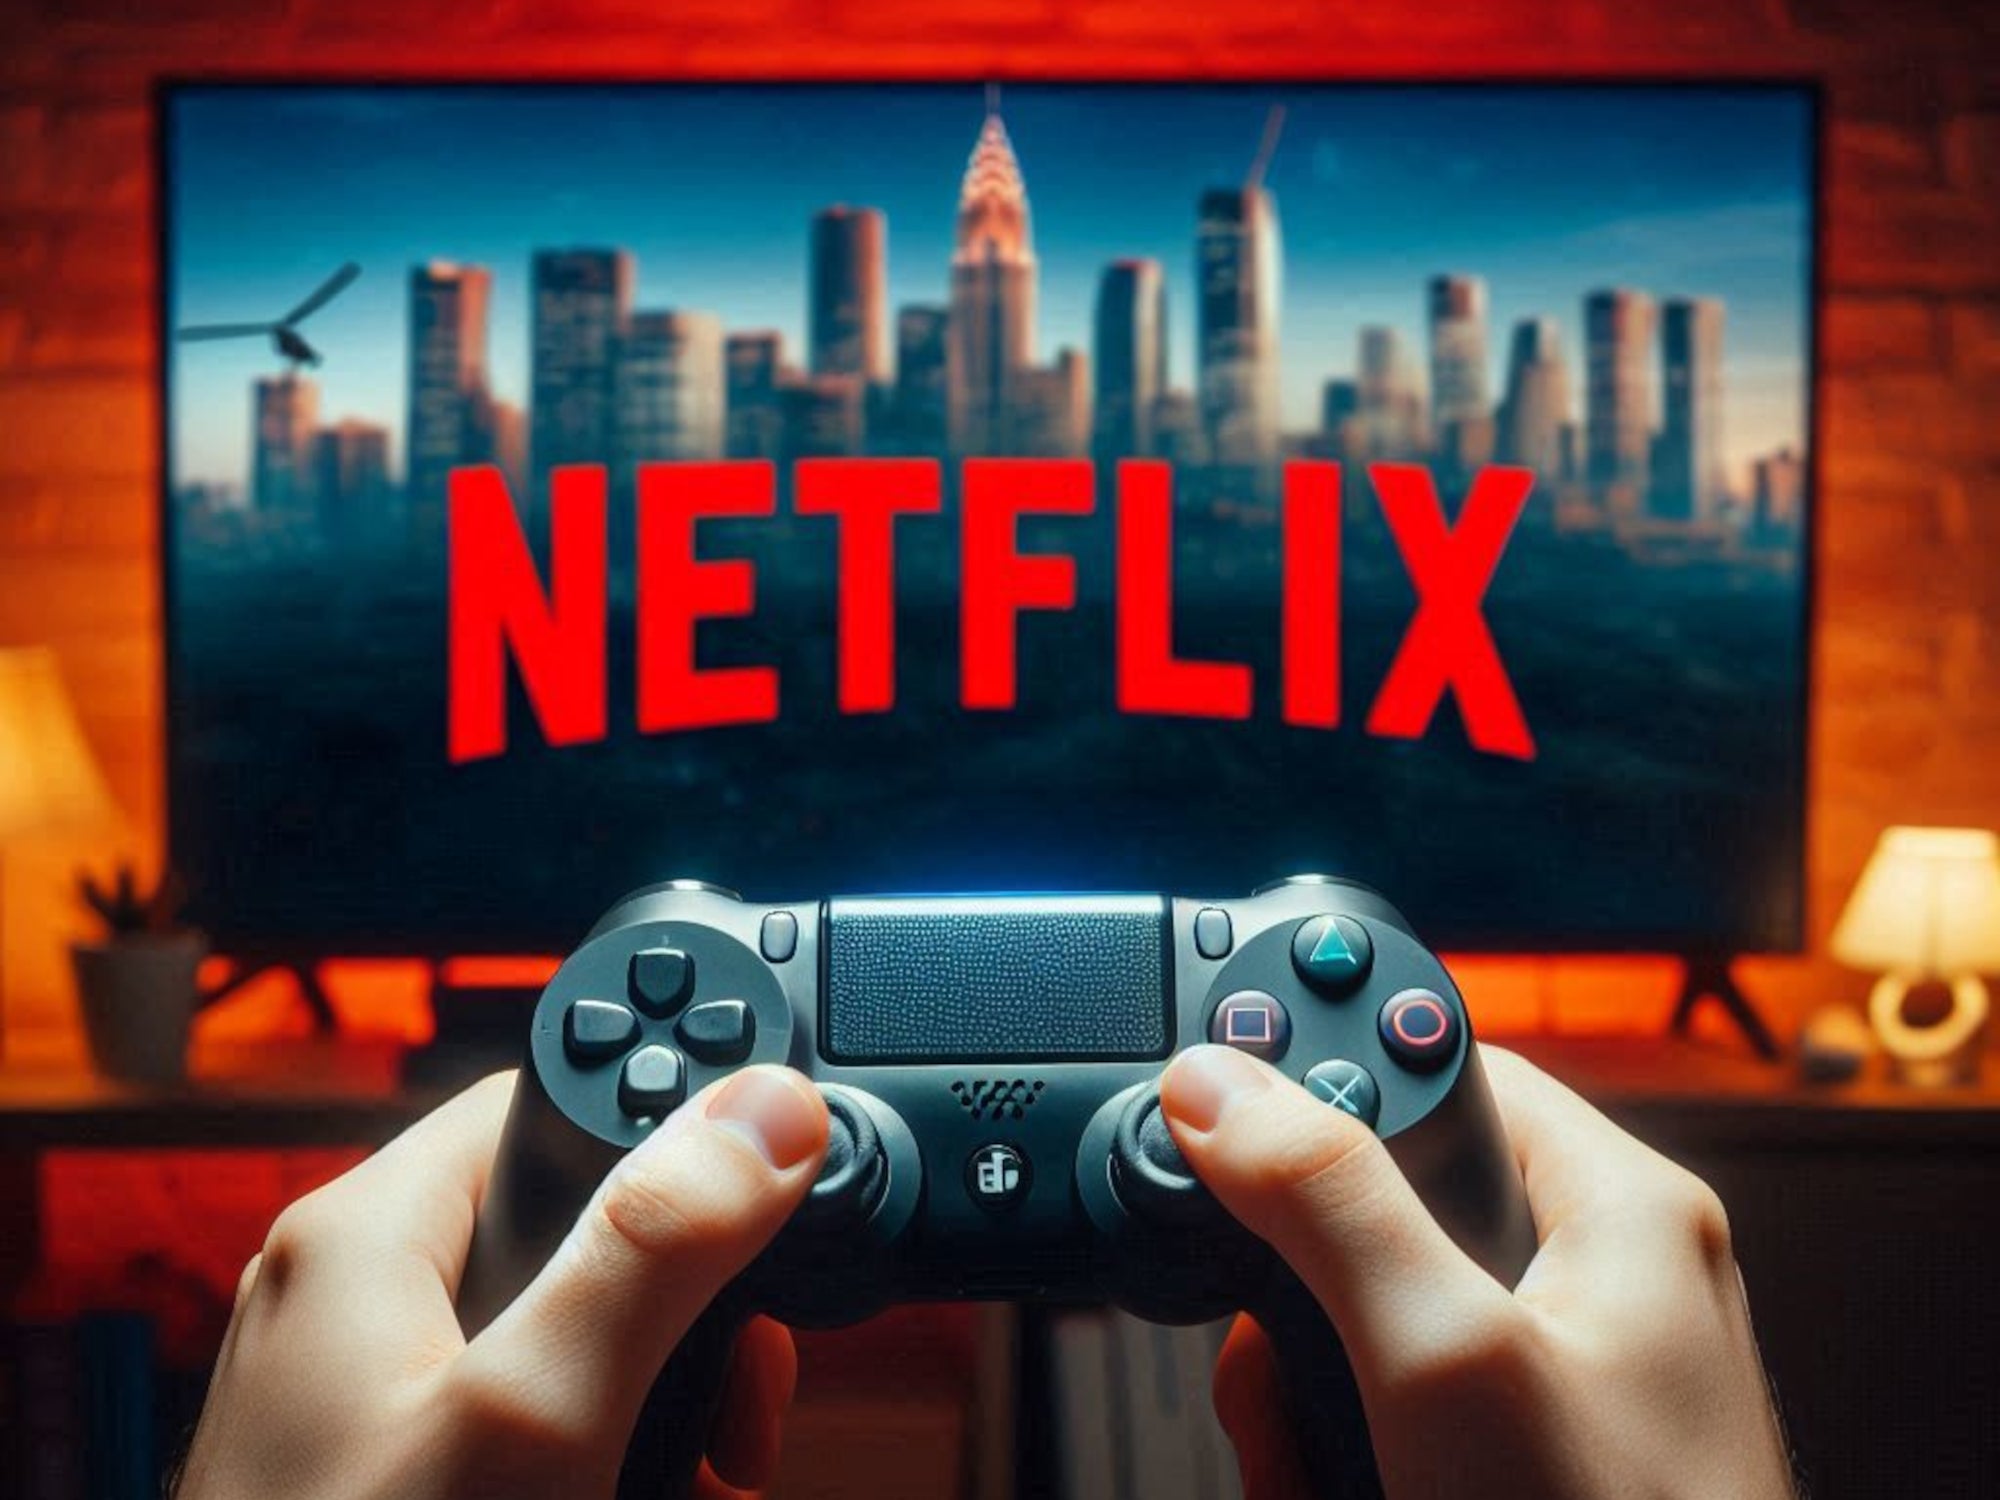 Das Netflix Logo auf einem Bildschirm mit einem Controller.